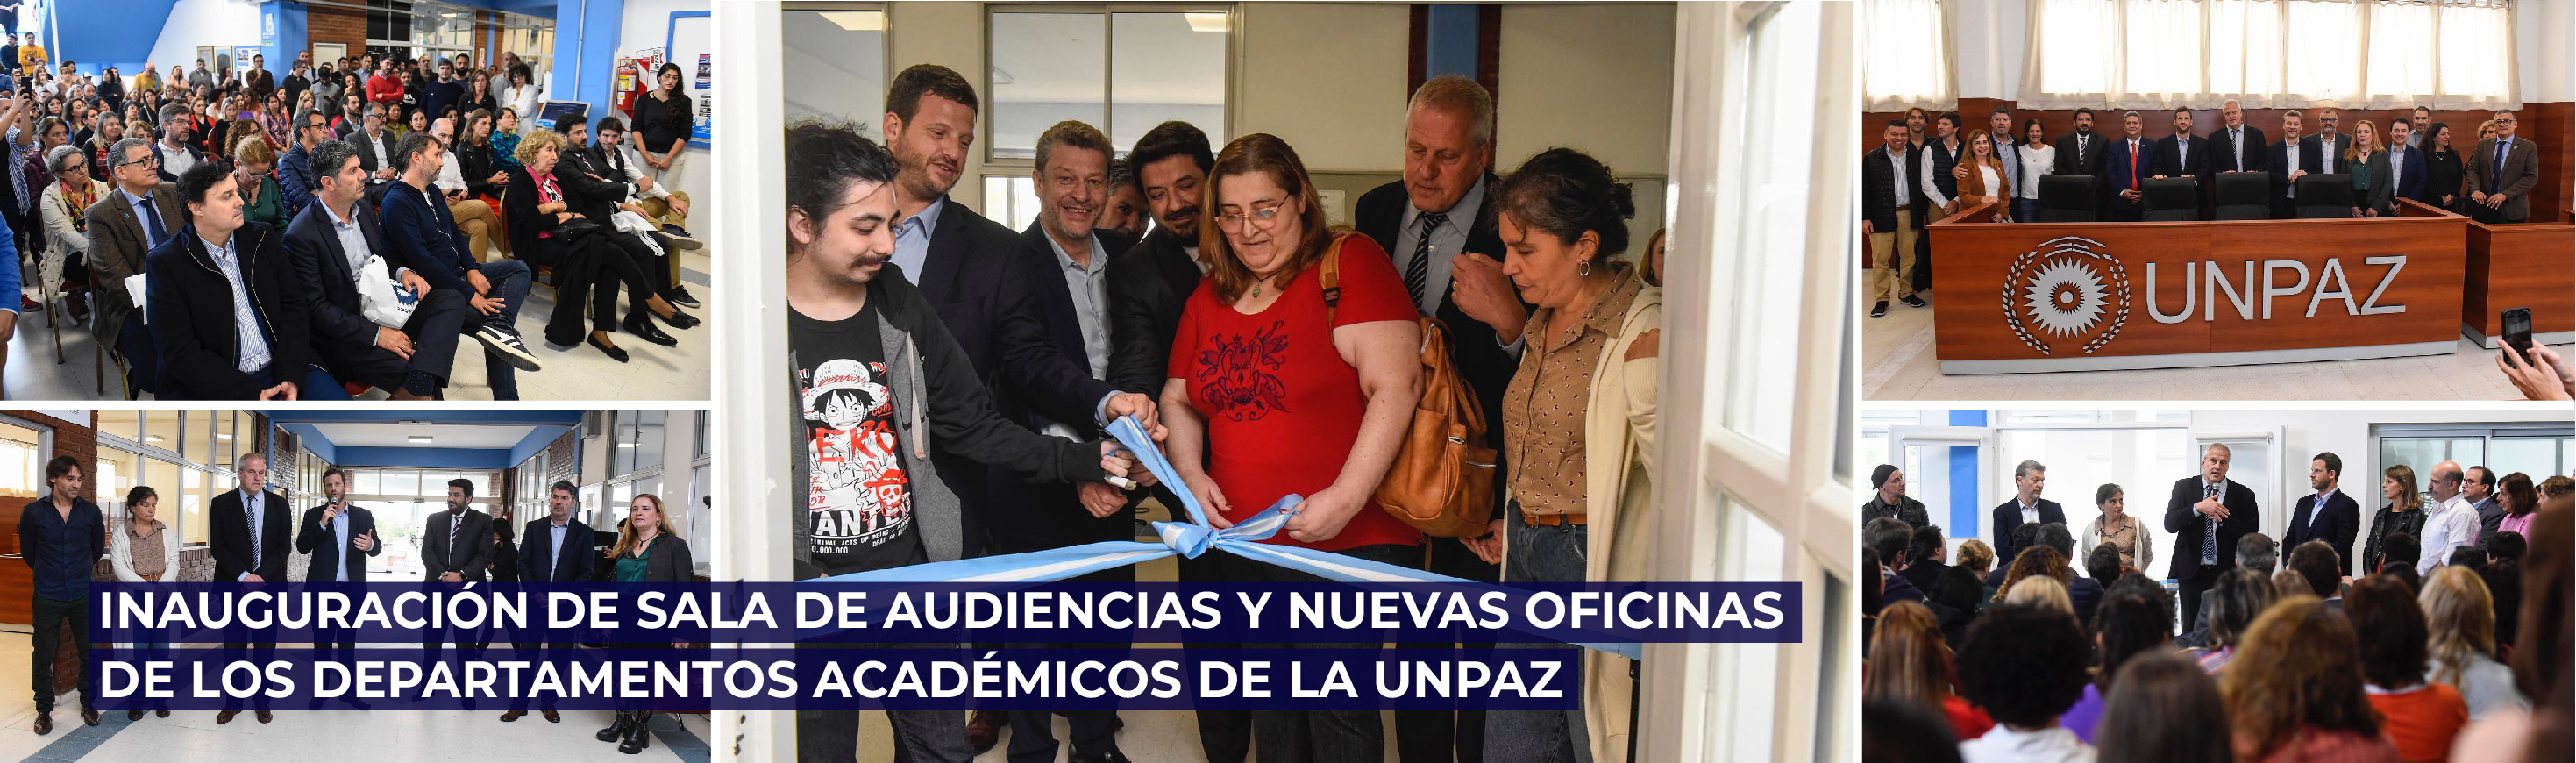 Inauguración de sala de audiencias y oficinas de los departamentos académicos de la UNPAZ